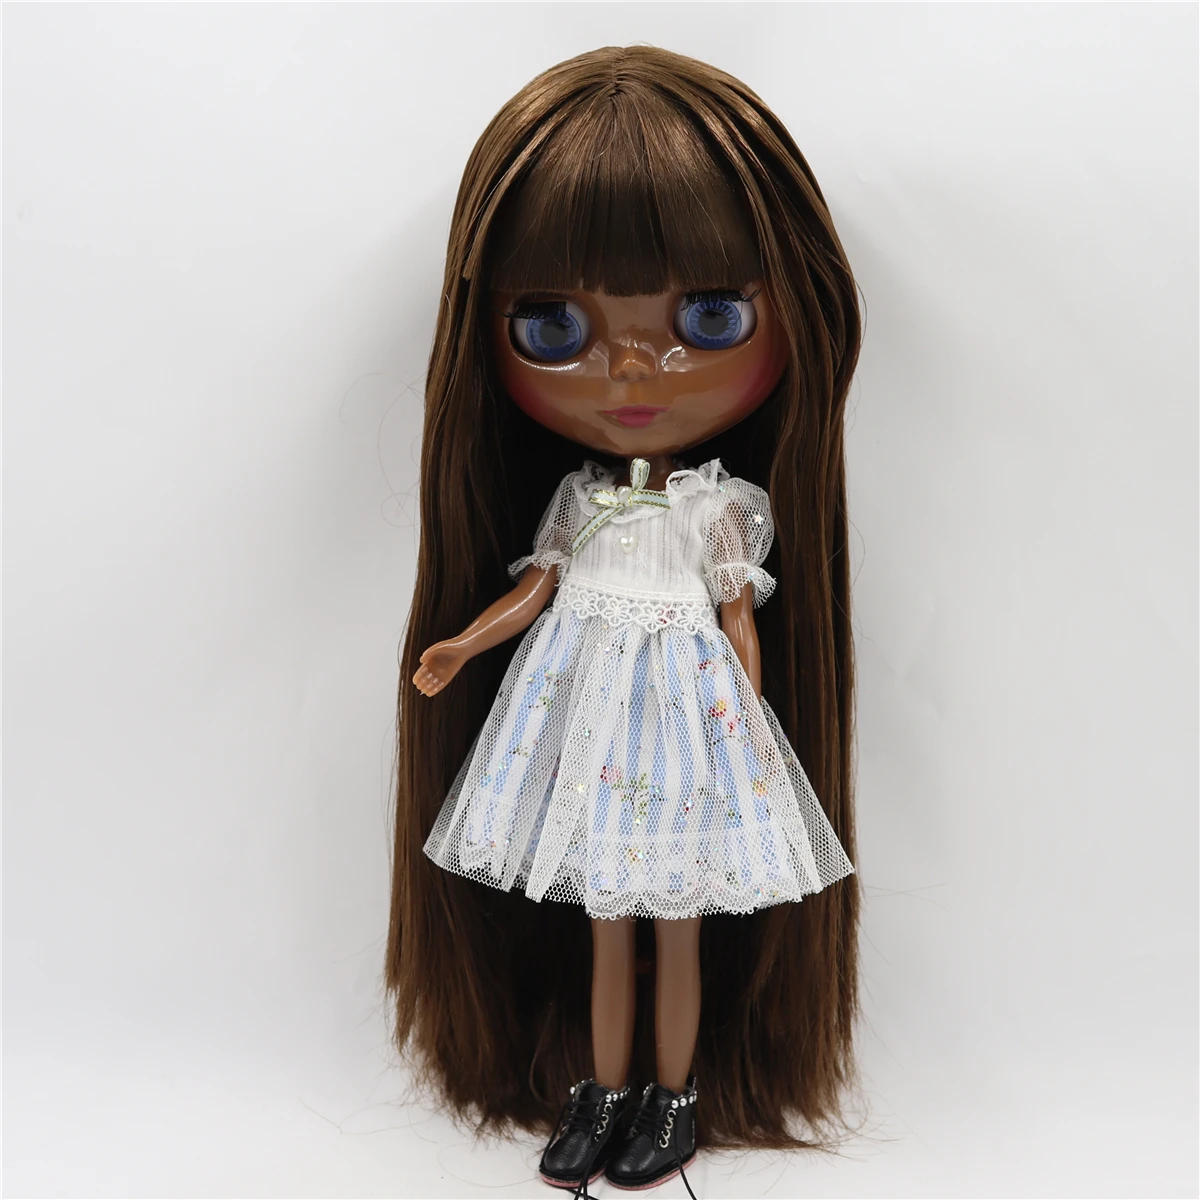 Фабрика blyth кукла 1/6 bjd шарнир тела темная кожа матовое лицо, фиолетовые волосы, кукла без одежды 30 см BL7216